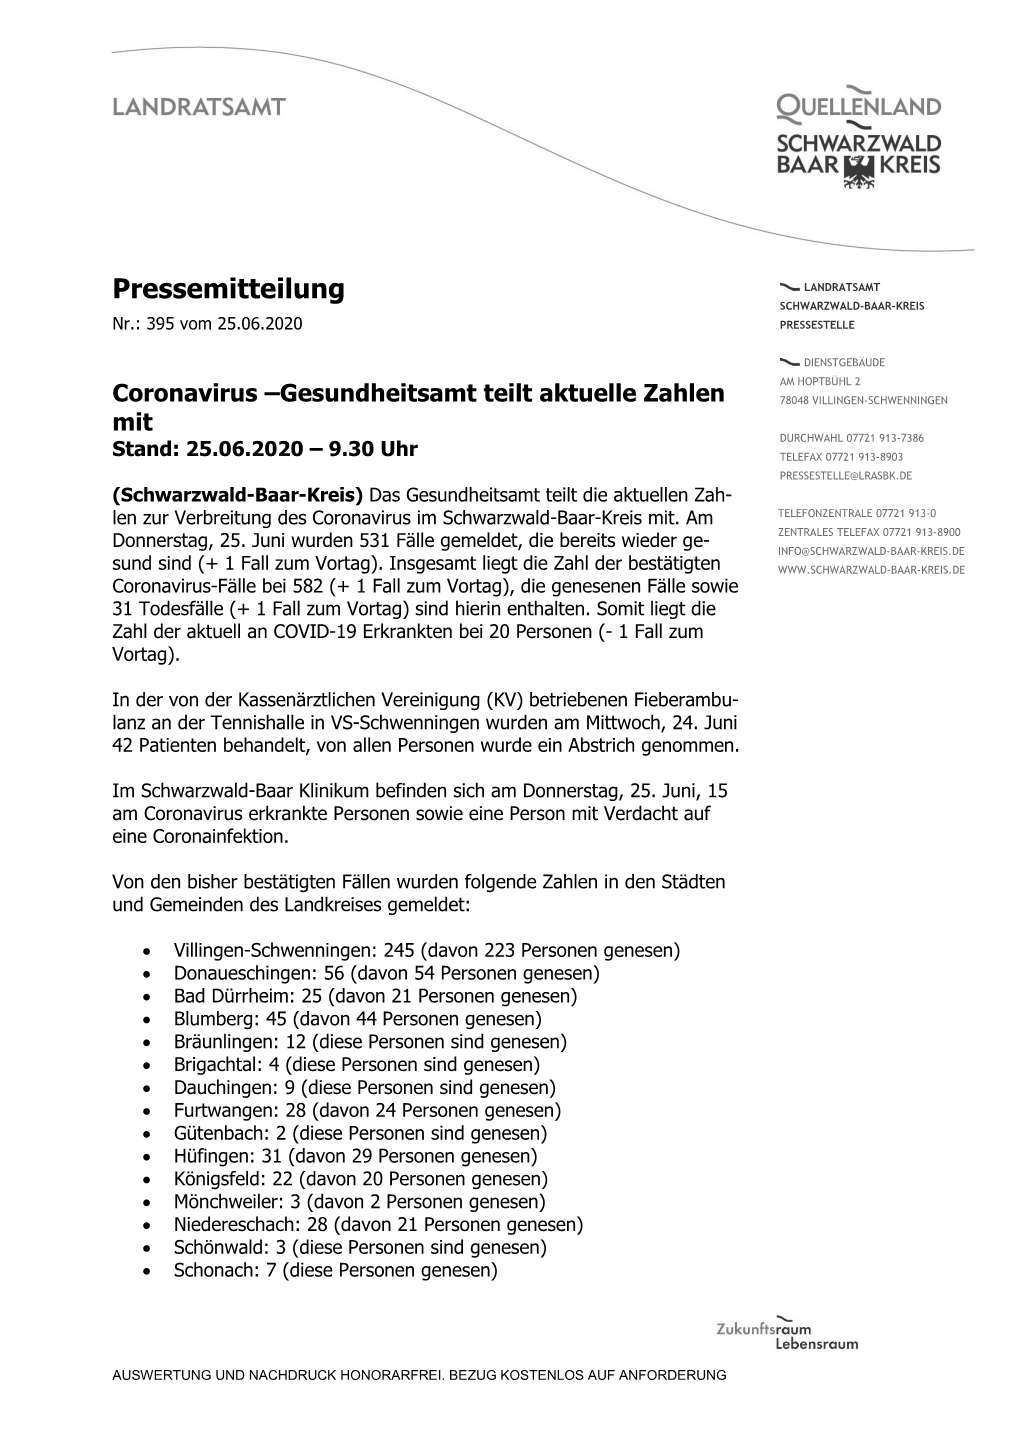 Pressemitteilung LANDRATSAMT SCHWARZWALD-BAAR-KREIS Nr.: 395 Vom 25.06.2020 PRESSESTELLE